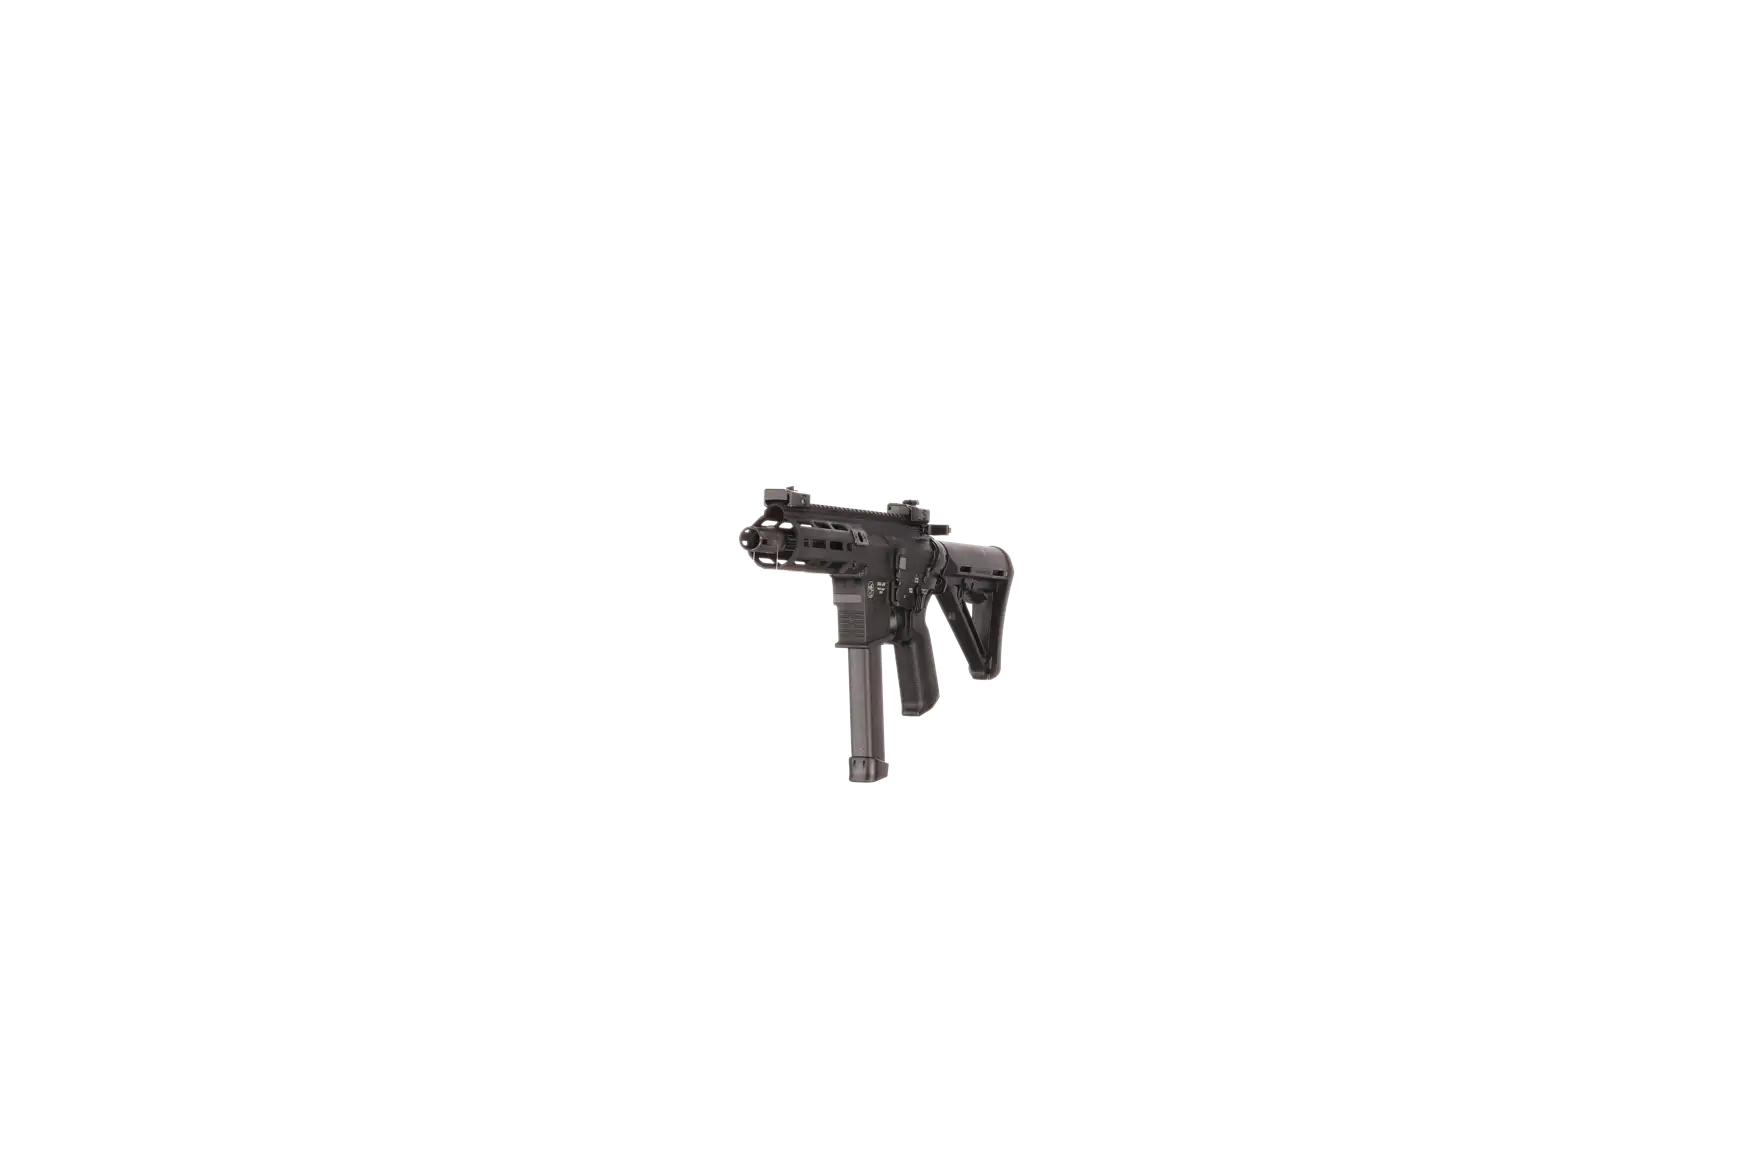 Náhledový obrázek pušky V-AR 9mm luger SPINVIEW 1 R23